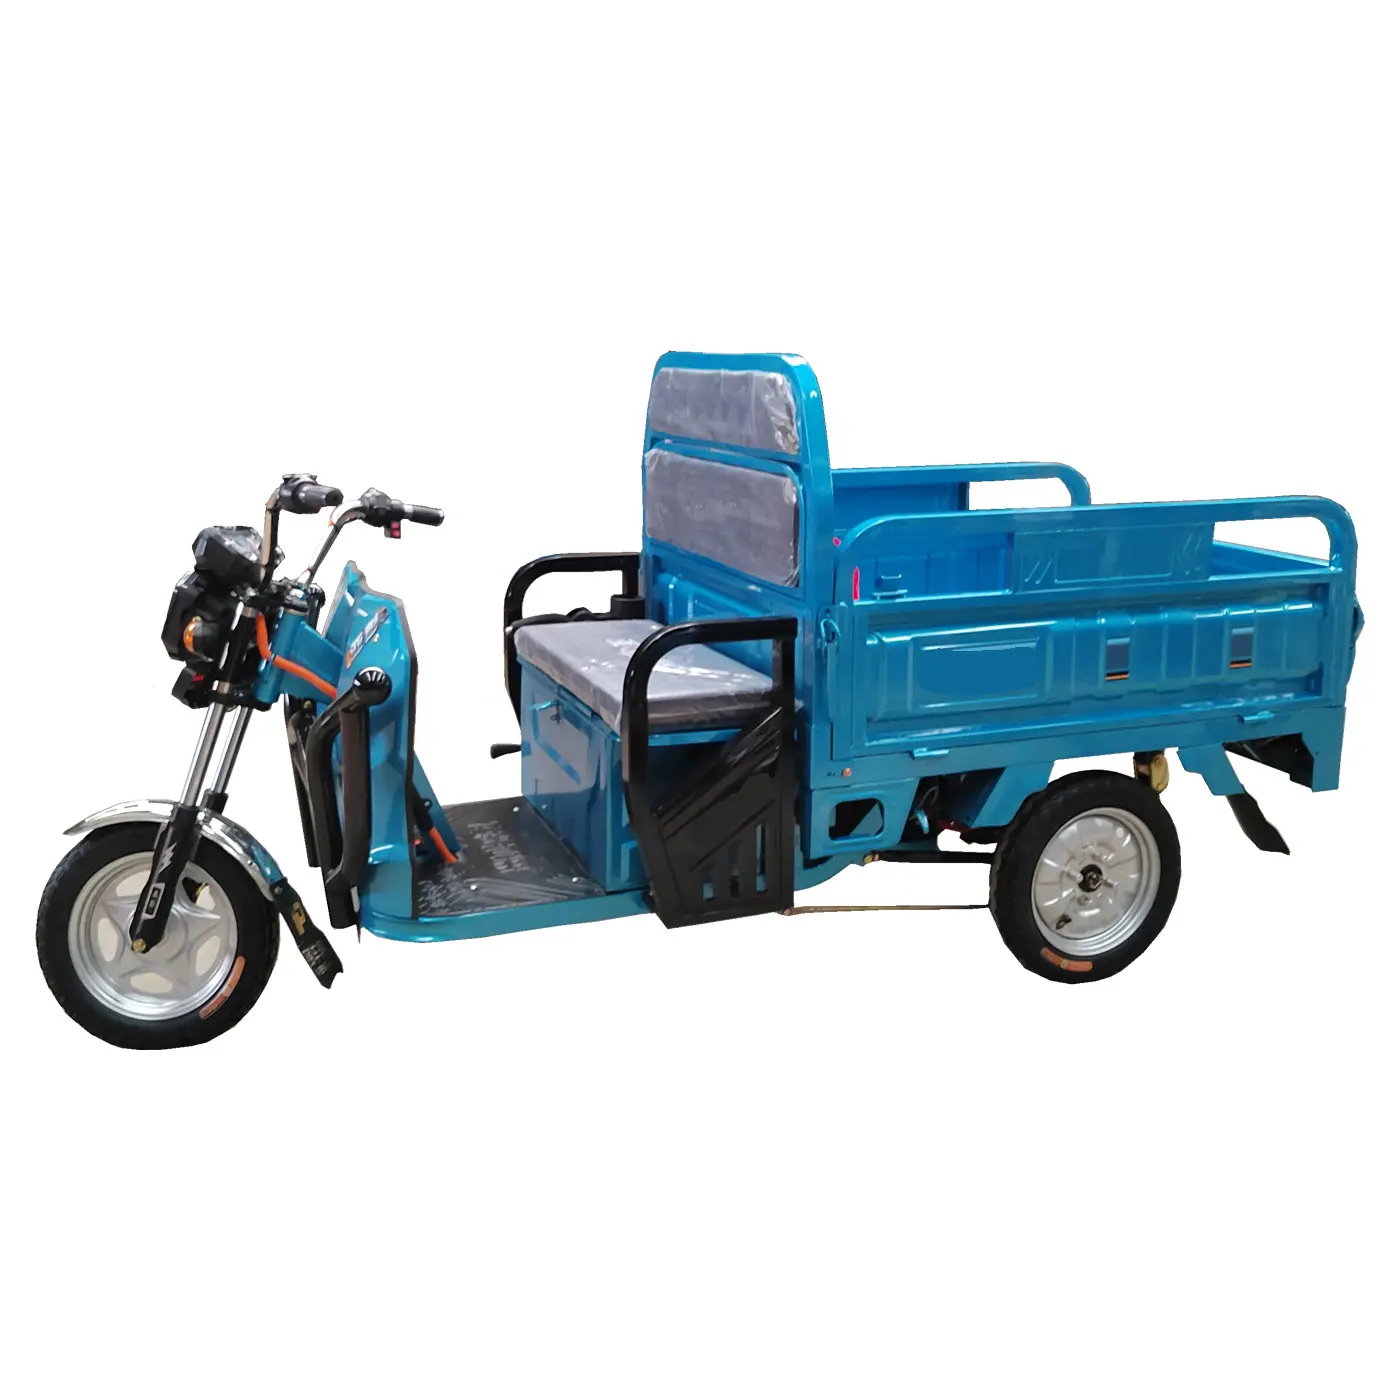 تريسيكل إلكتروني رخيص الثمن بثلاث عجلات، دراجة كهربائية لنقل البضائع، موتوسيكل ثلاثي العجلات للكبار